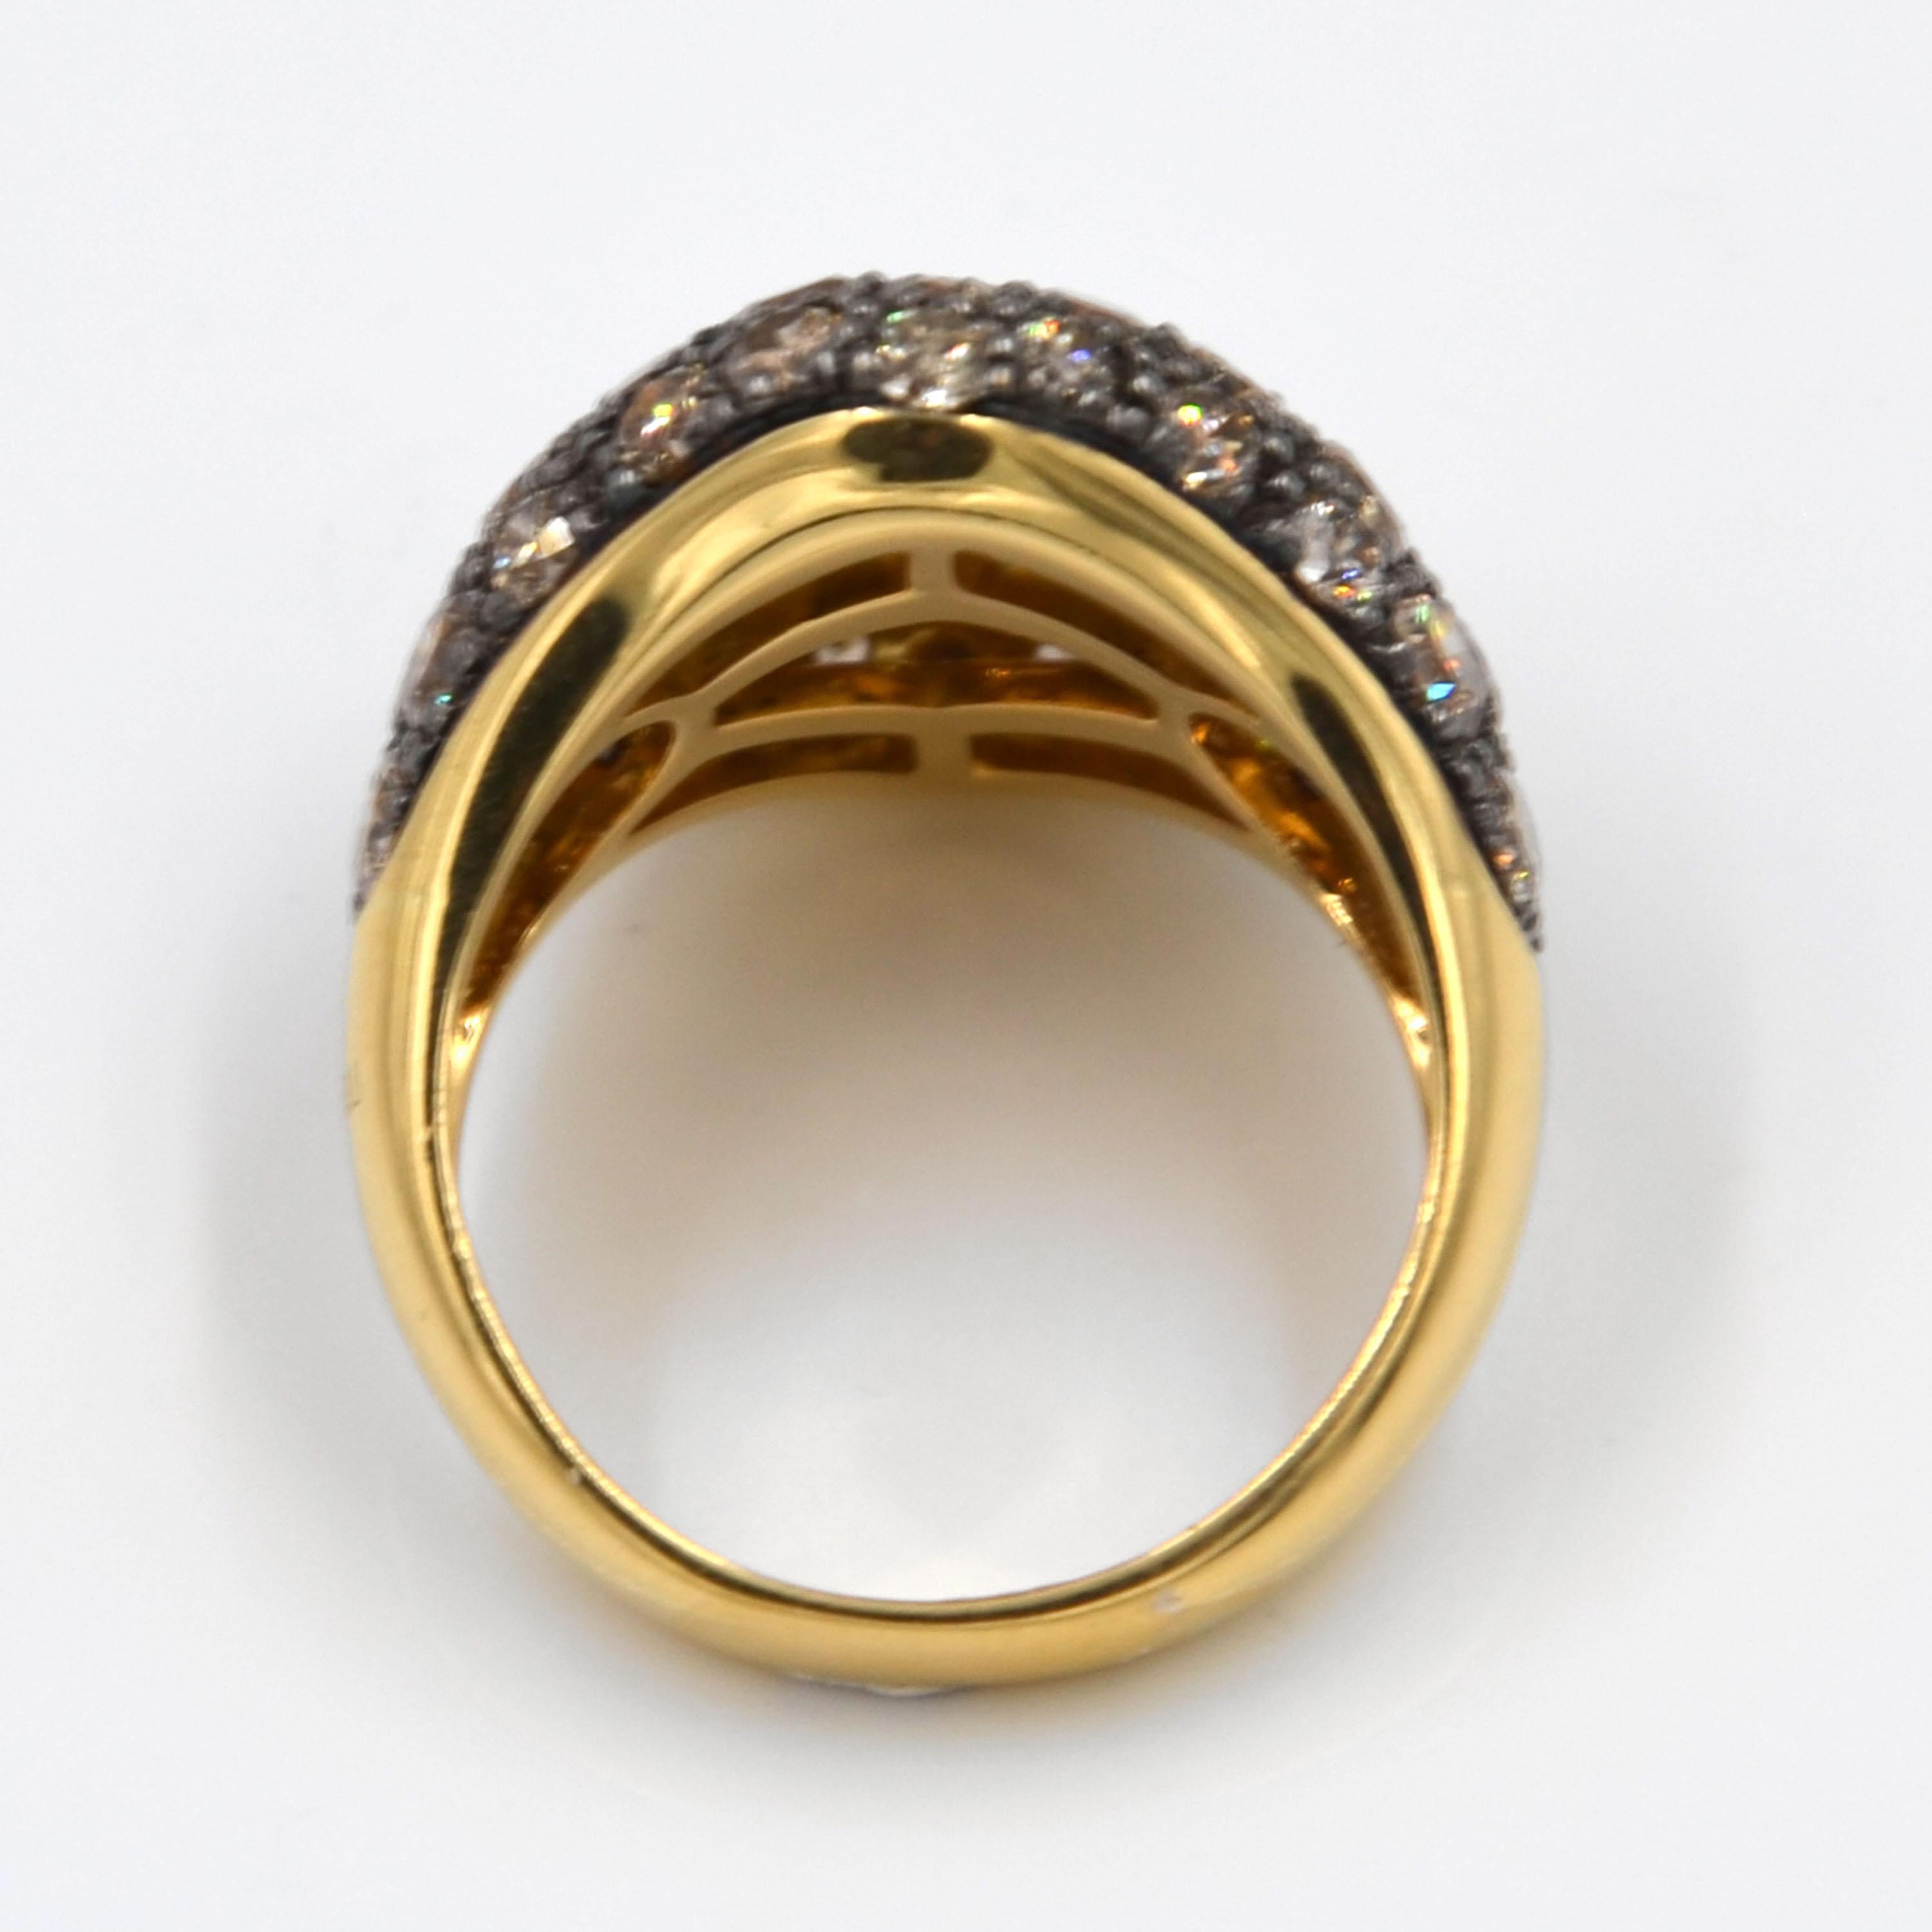 Bague Garavelli en or jaune 18KT pavé de diamants bruns  Taille du doigt 55 . Taille de doigt US 7
Une forme carrée moderne et douce en diamants bruns.
Or 18 carats  gr : 9,60
DIAMANTS BRUNS ct : 4.66